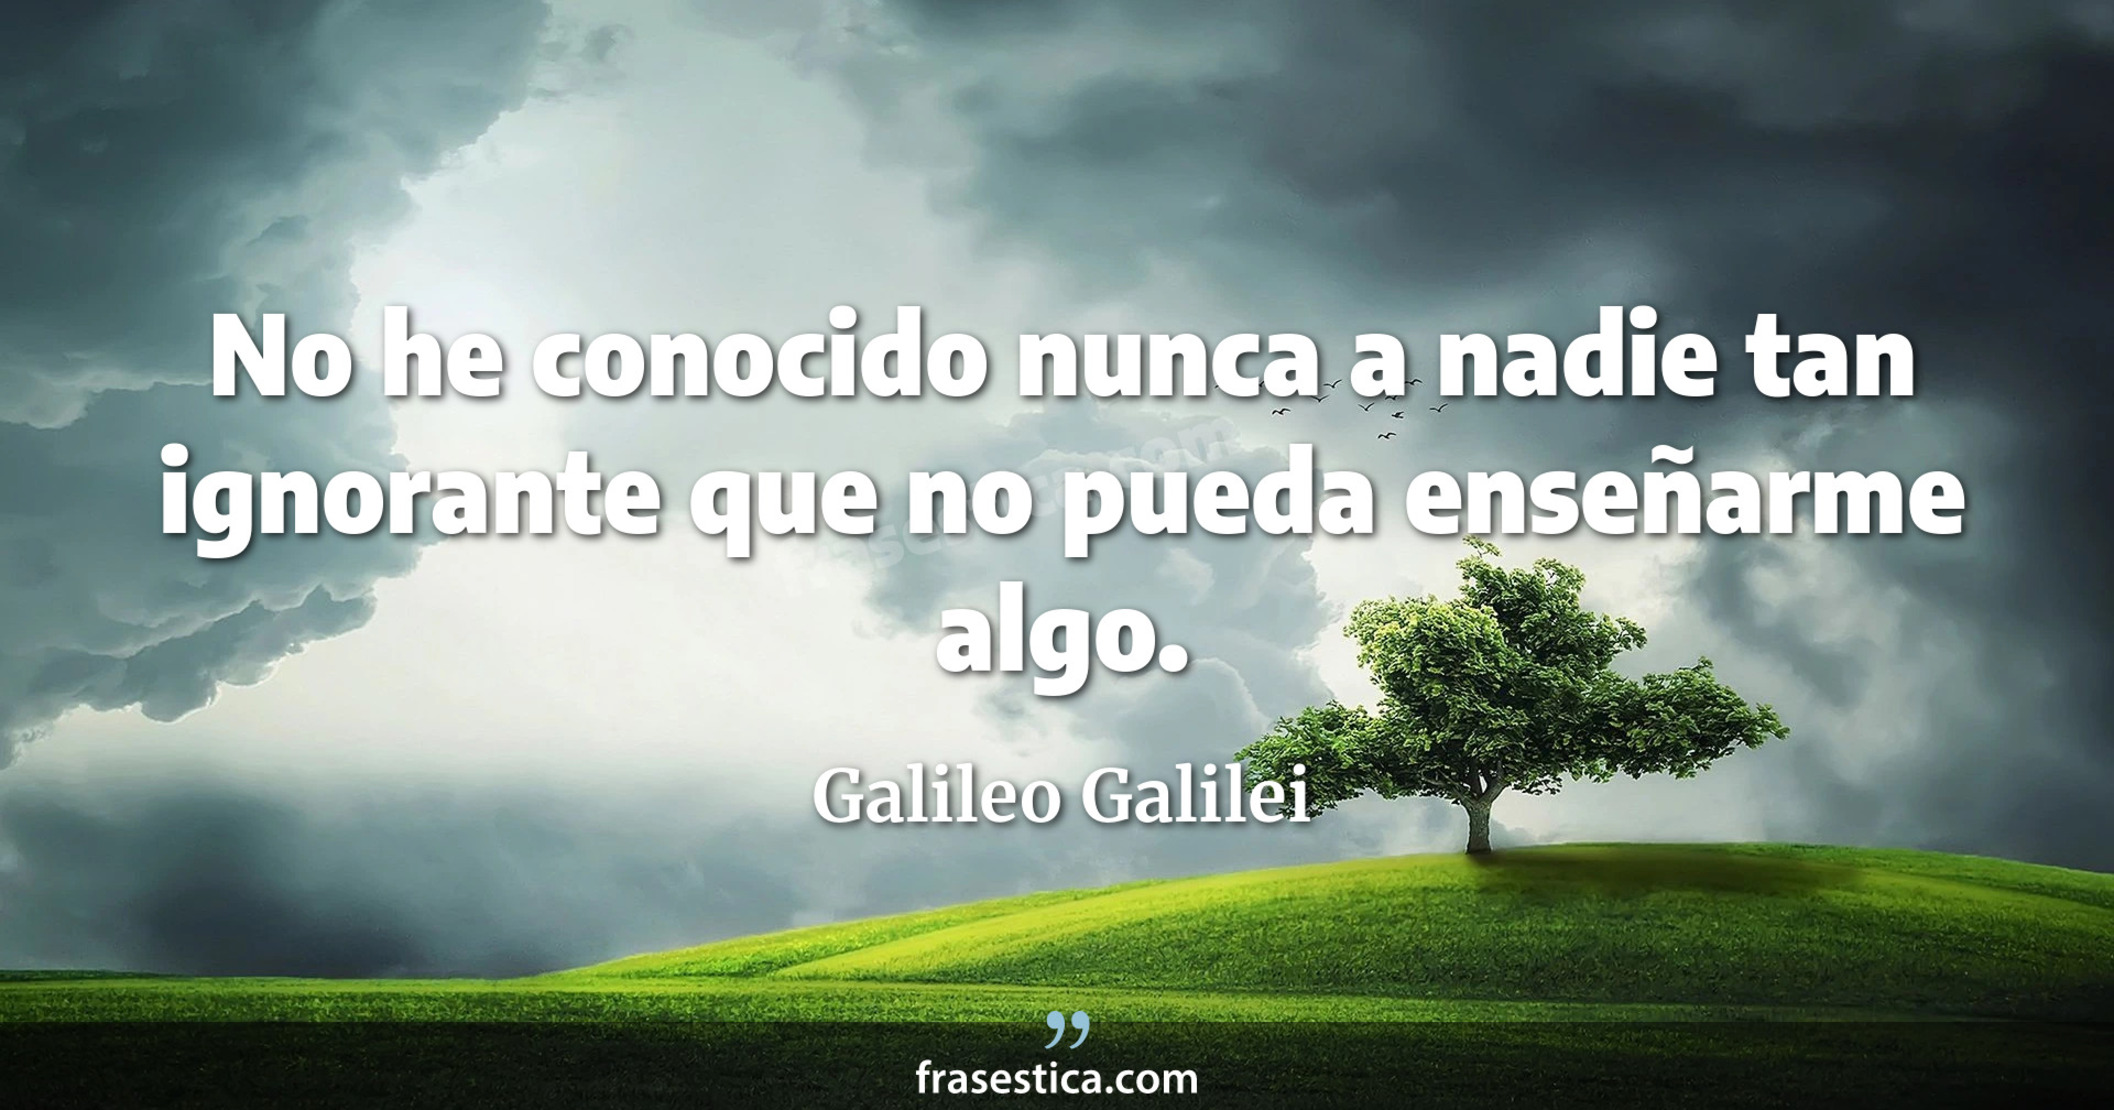 No he conocido nunca a nadie tan ignorante que no pueda enseñarme algo. - Galileo Galilei